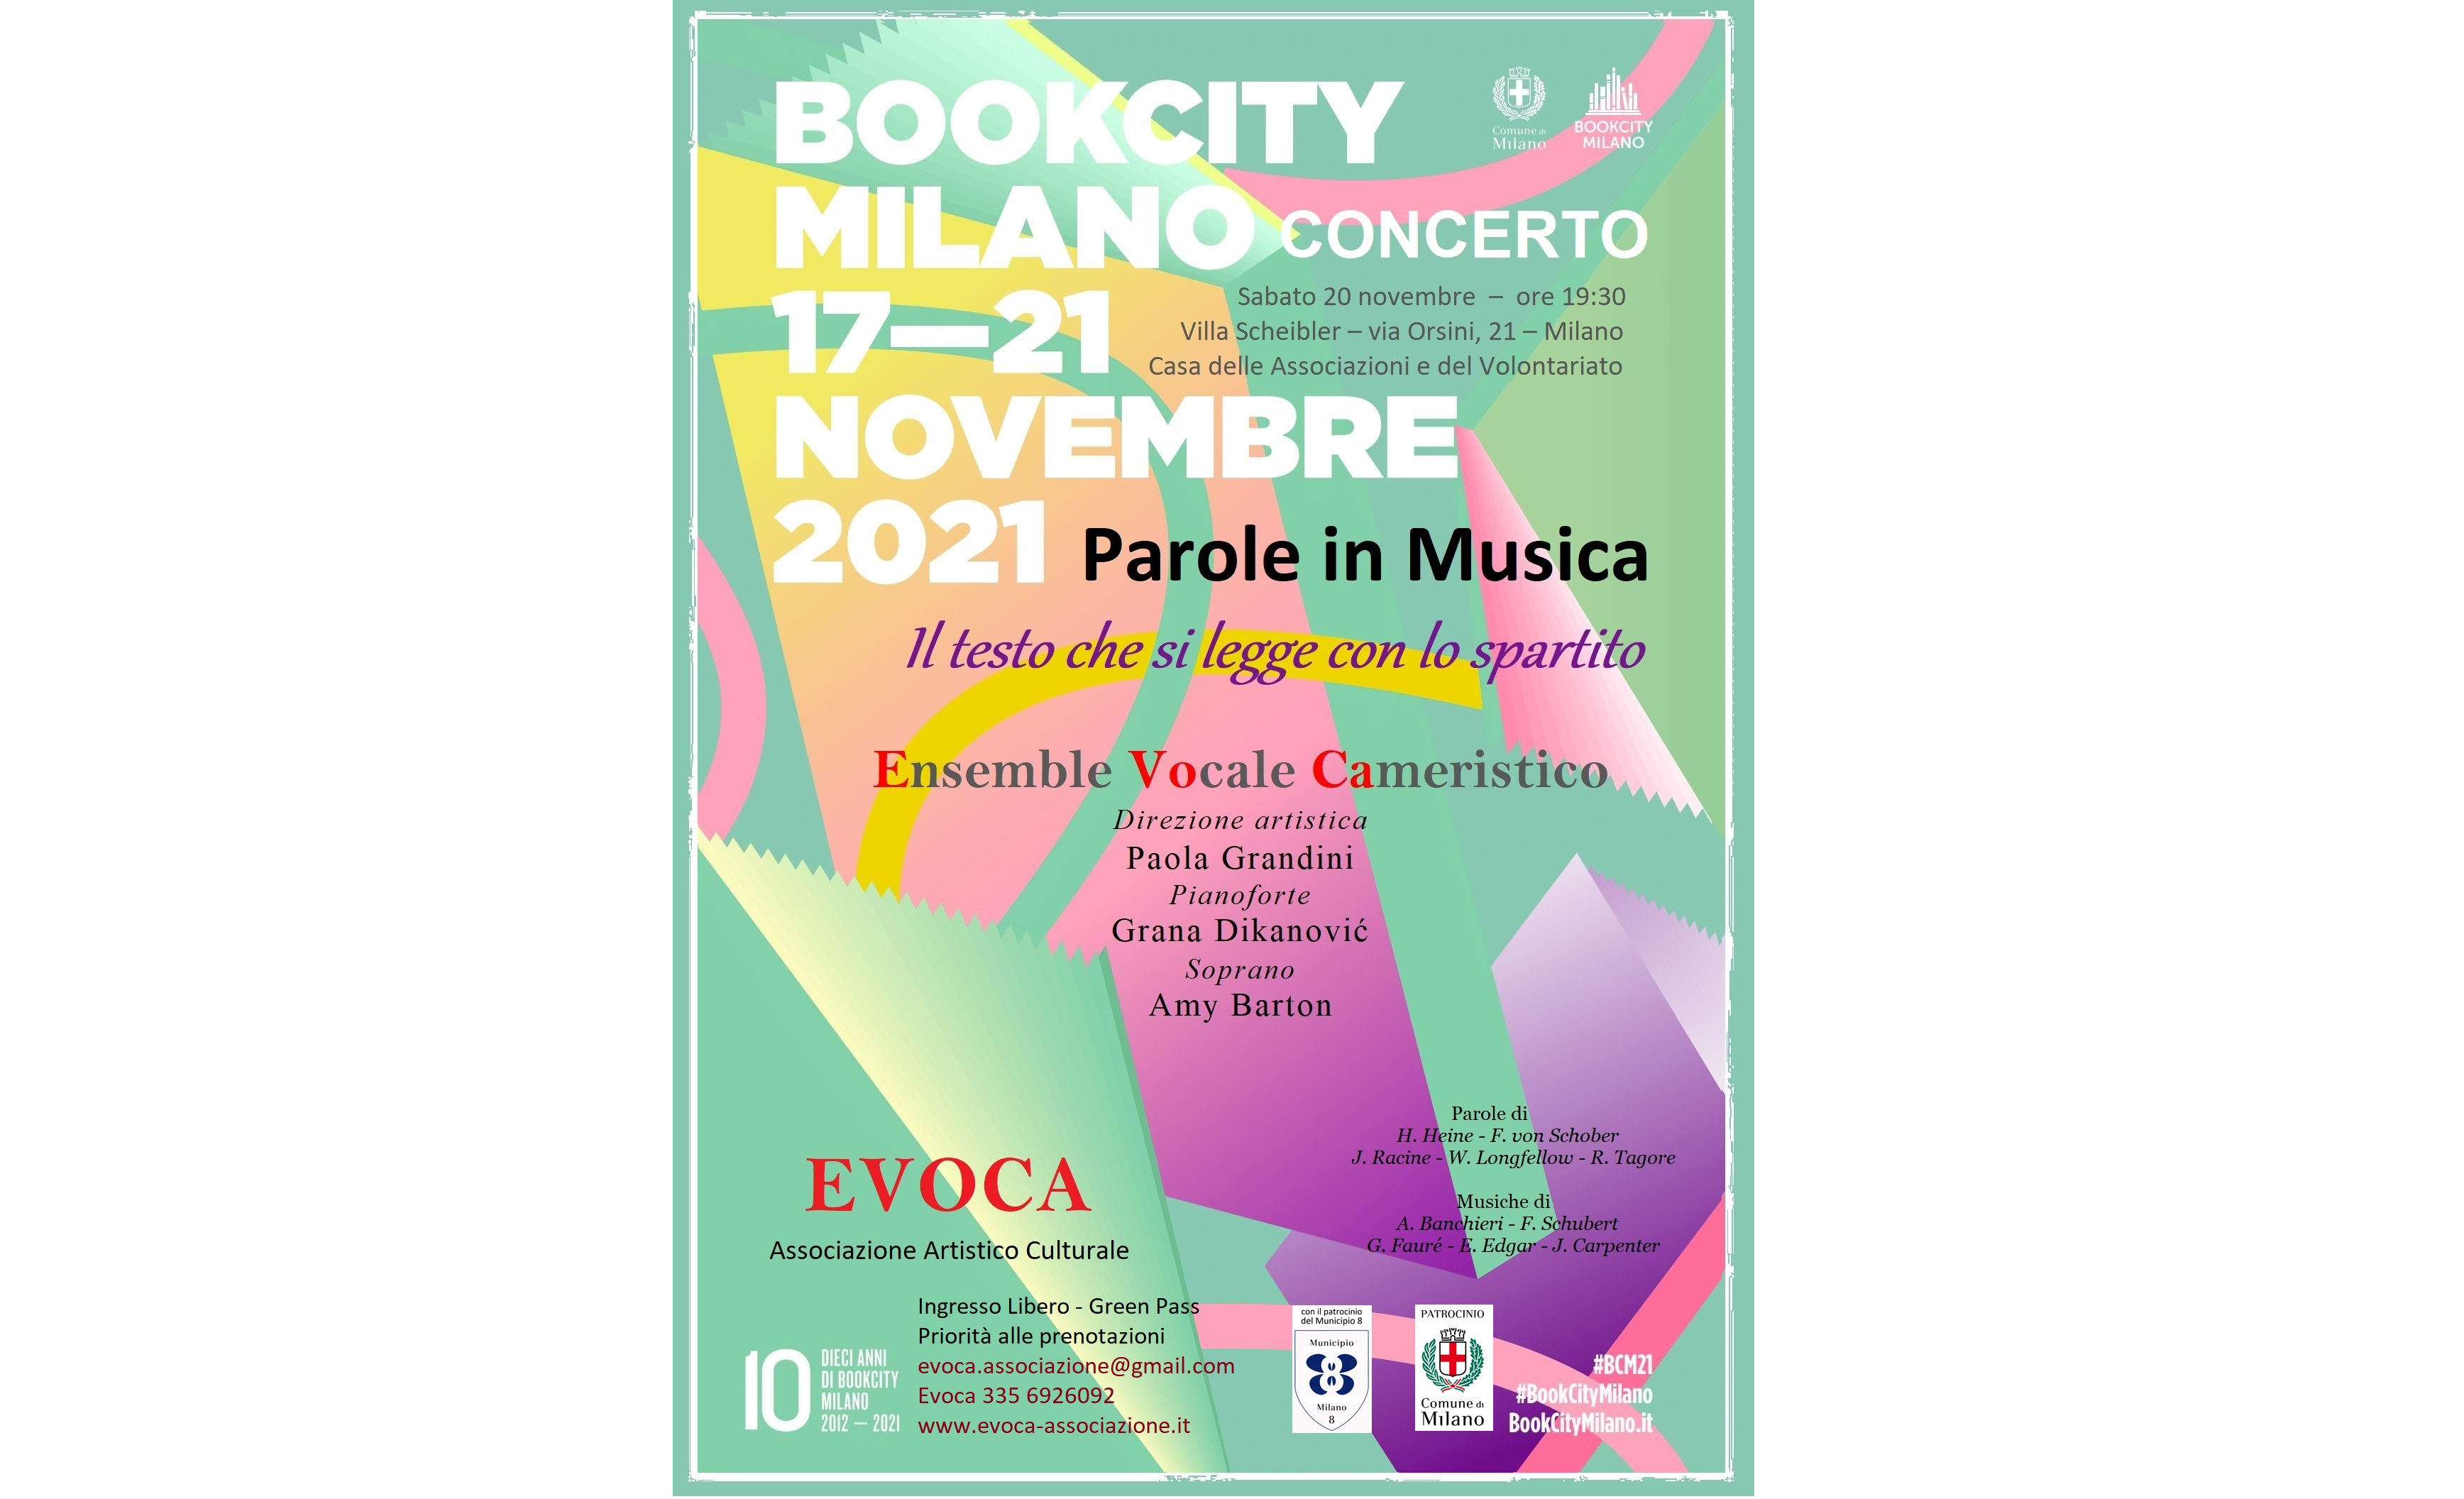 BOOKCITY MILANO 2021 - Parole in Musica - Il testo che si legge con lo spartito